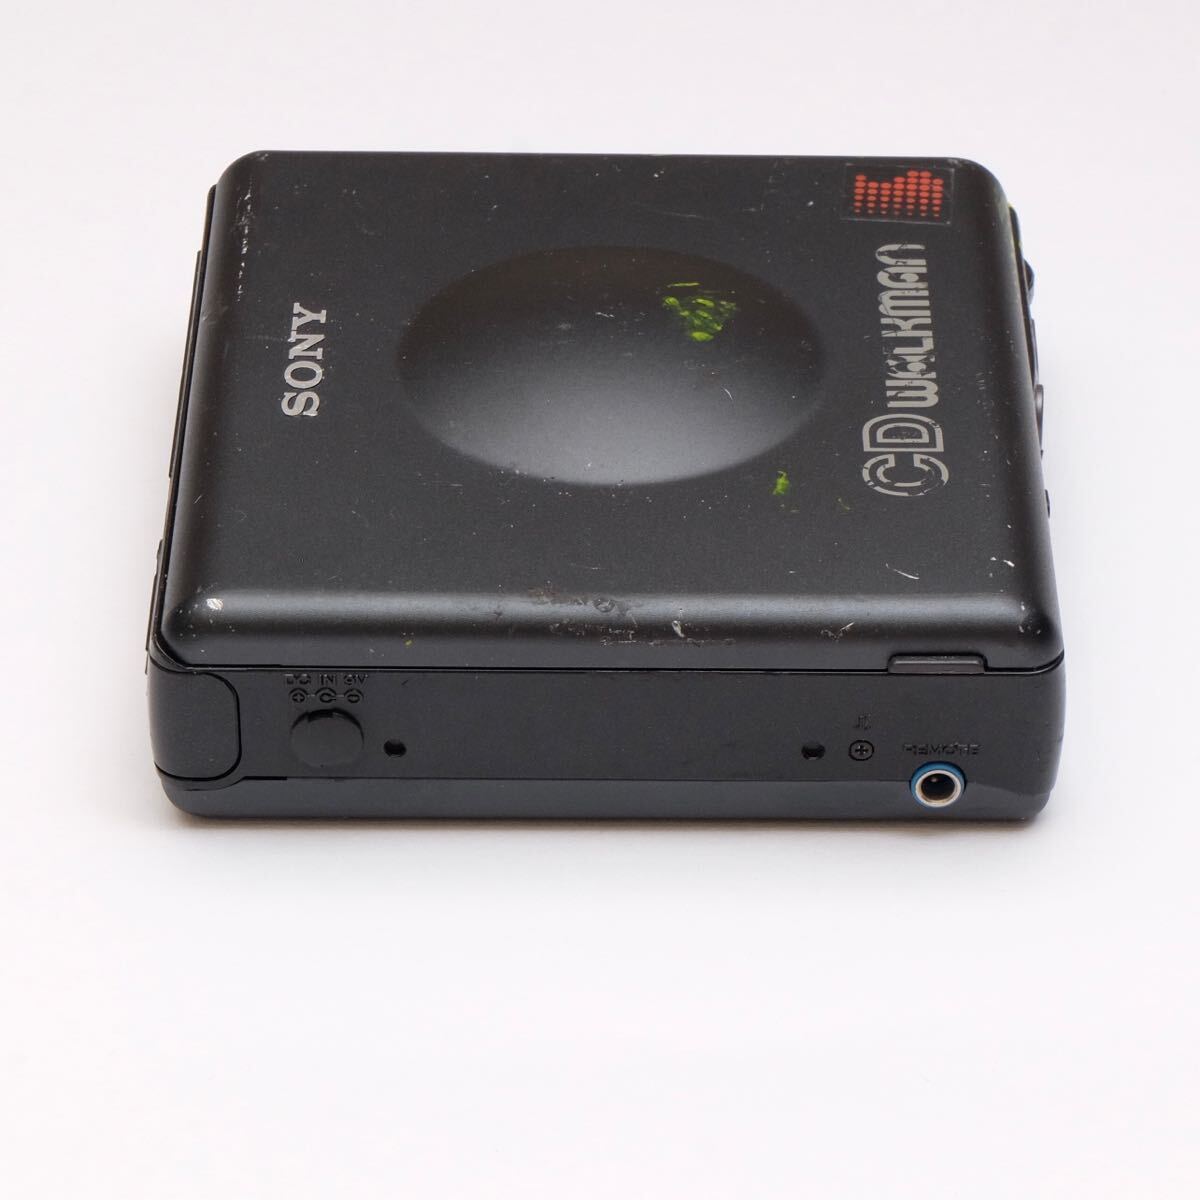 SONY Sony D-82 WALKMAN Walkman 8cmCD Junk портативный CD плеер Discman диск man 